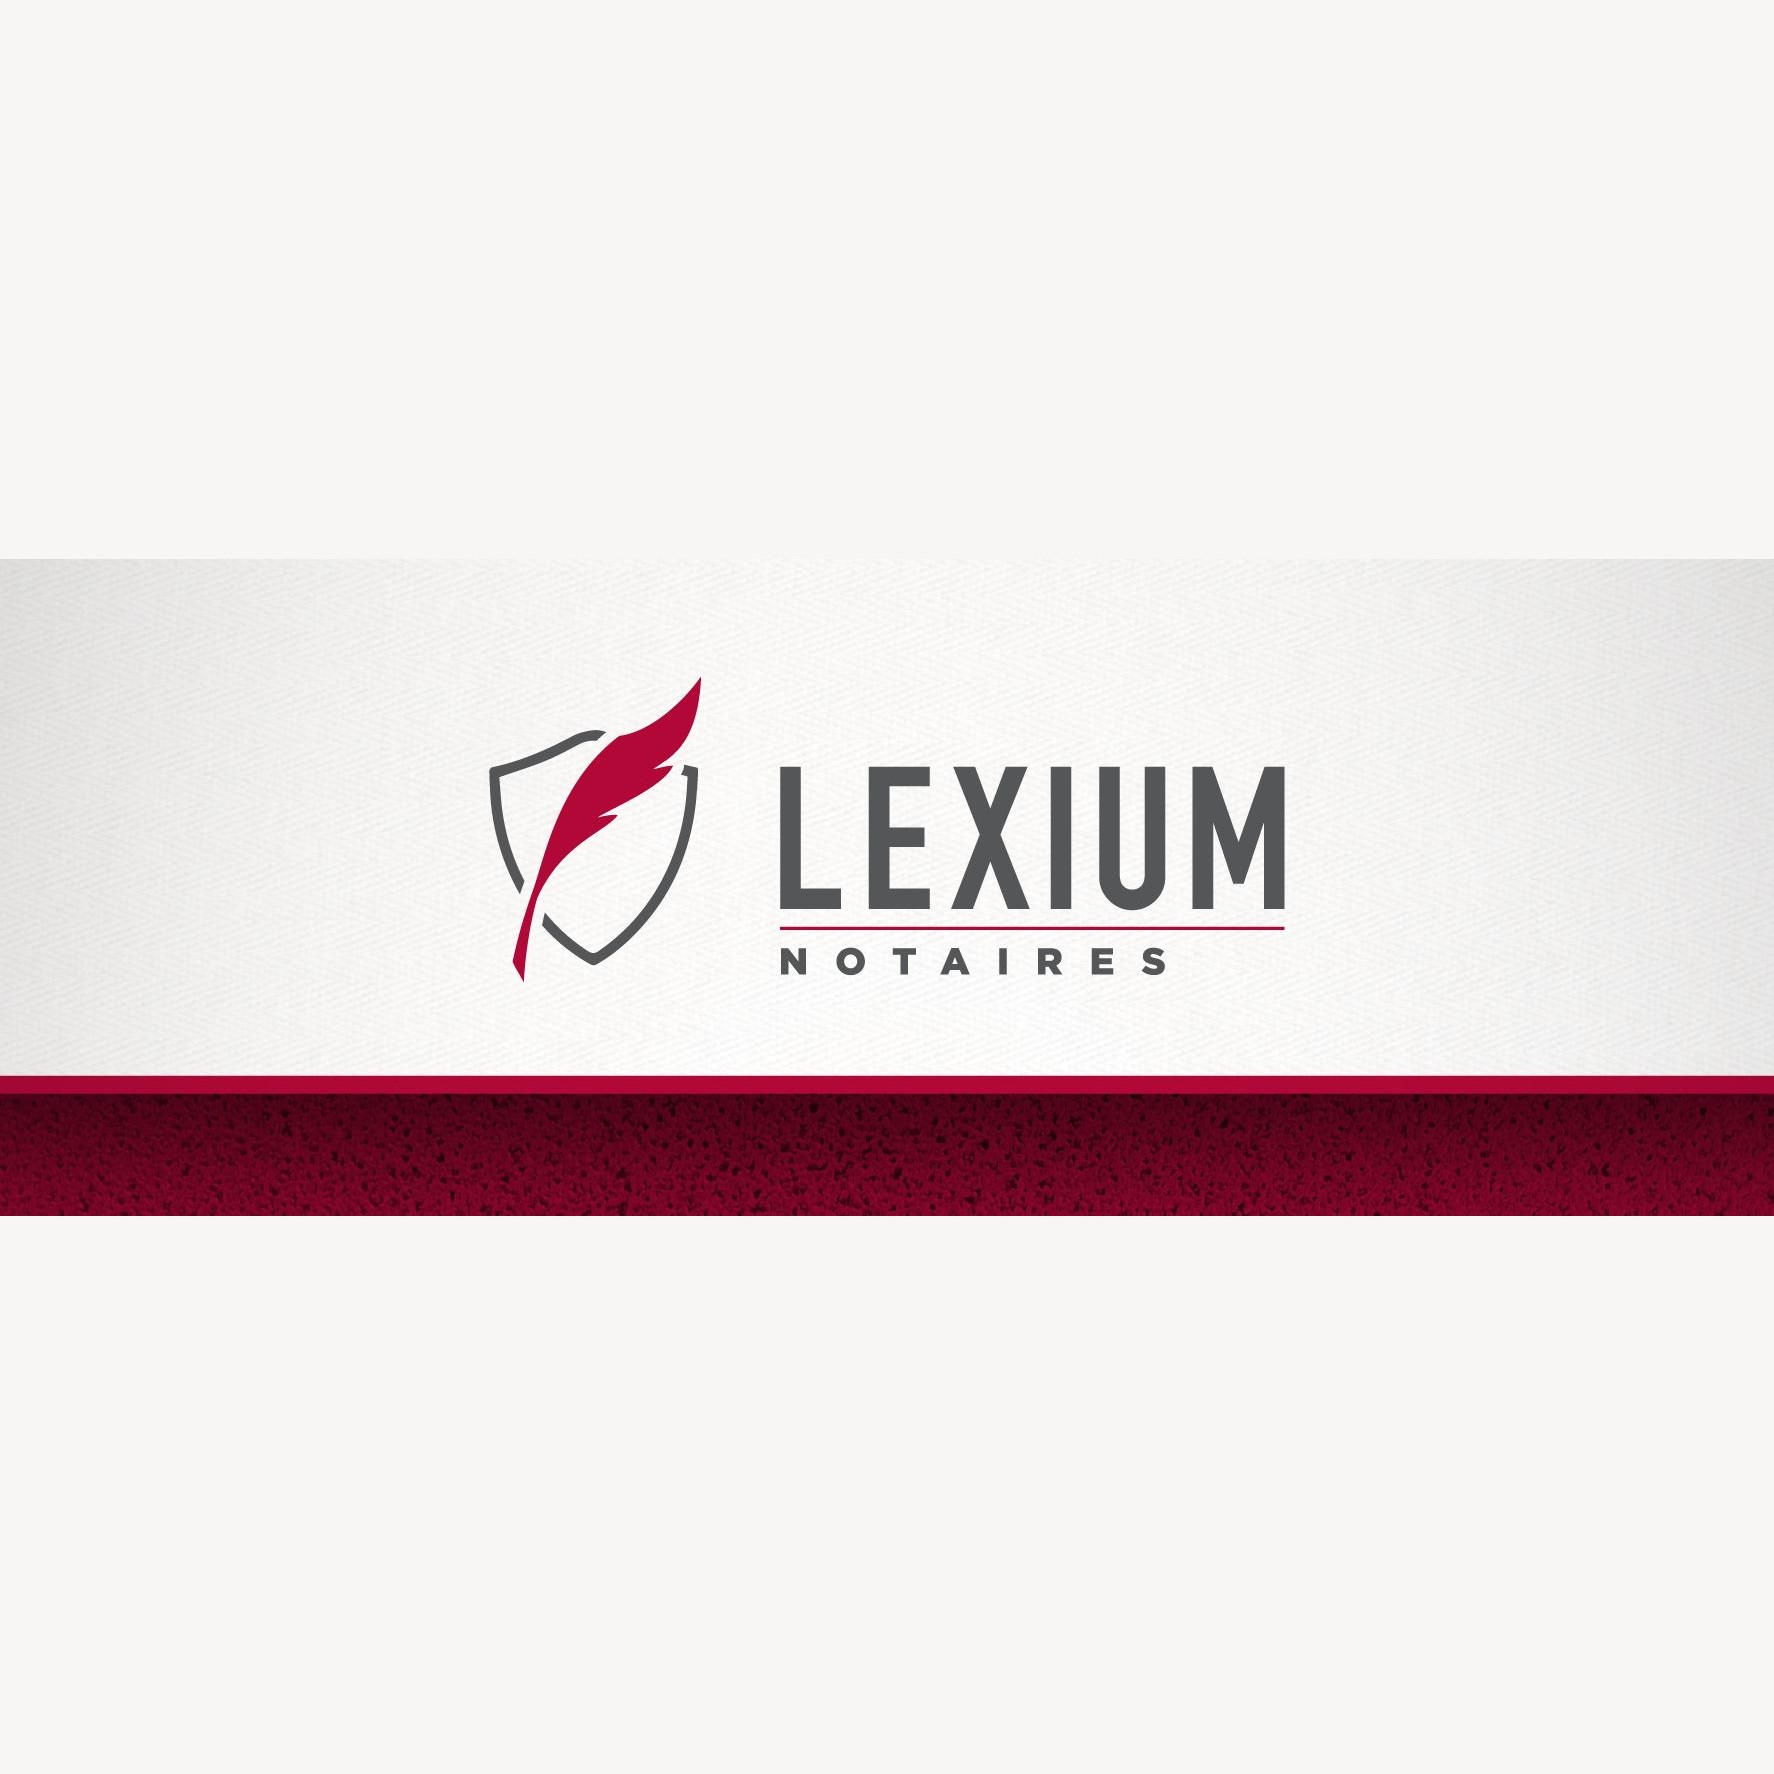 Lexium Notaires